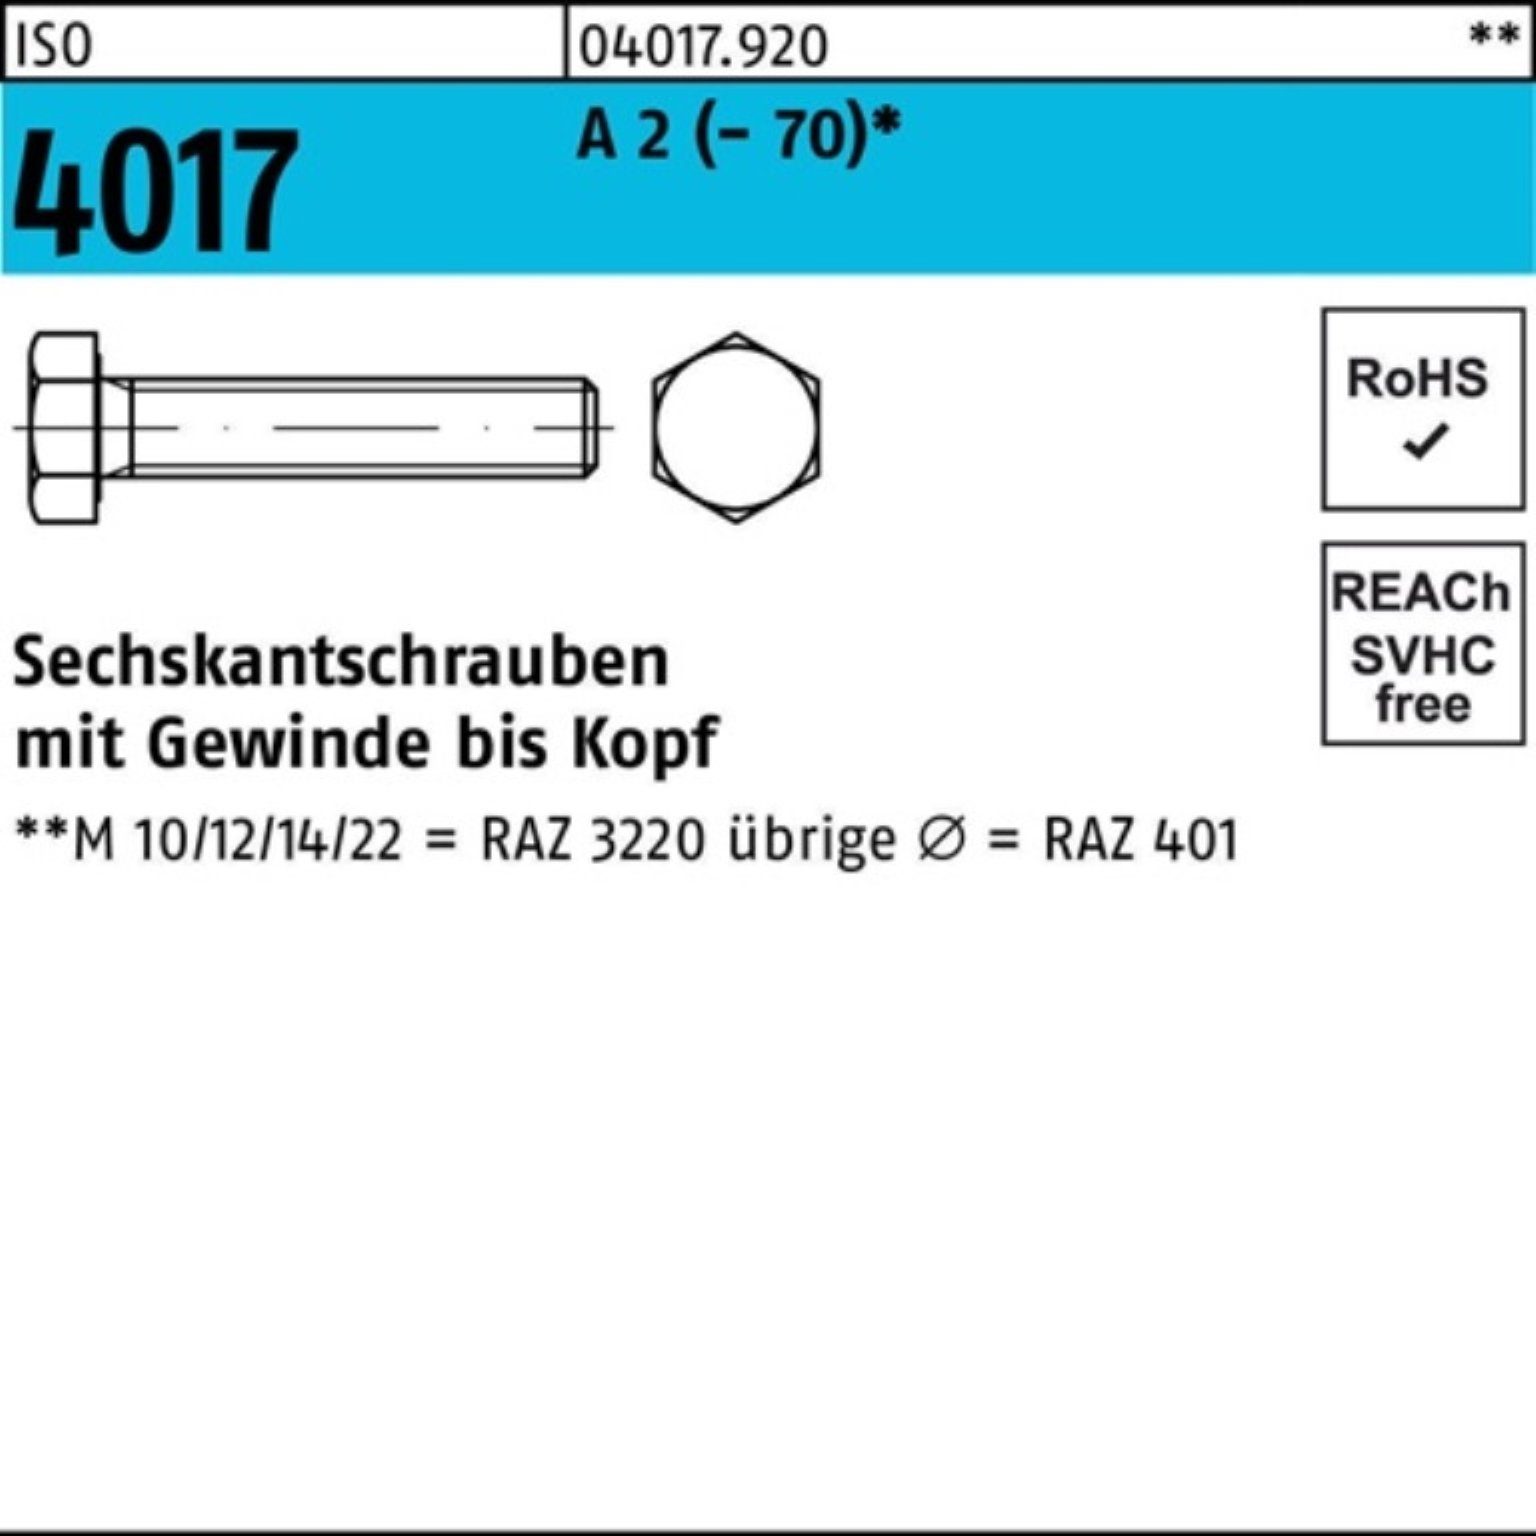 Bufab Sechskantschraube 100er Pack Sechskantschraube ISO 4017 VG M16x 100 A 2 (70) 25 Stück | Schrauben